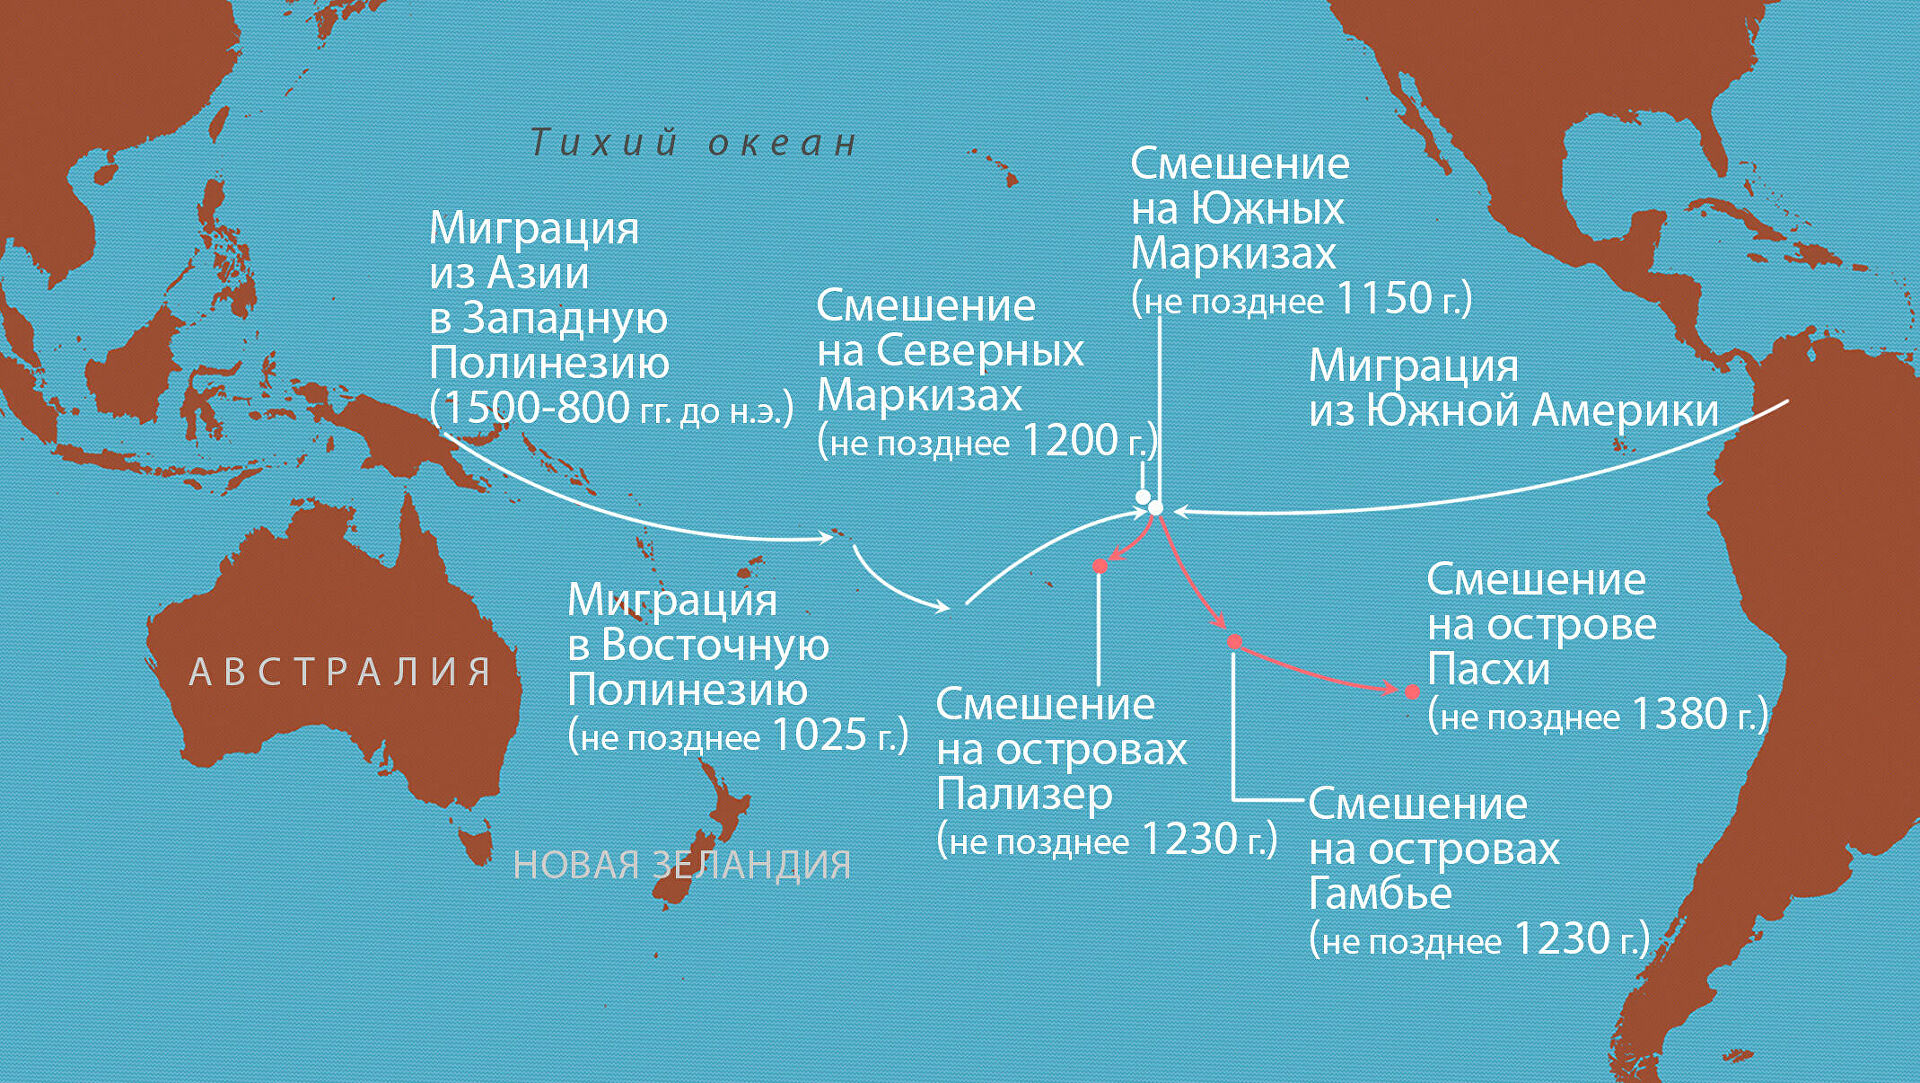 Название островов расположенных в тихом океане. Остров Пасхи на карте Тихого океана. Острова Полинезии на карте.